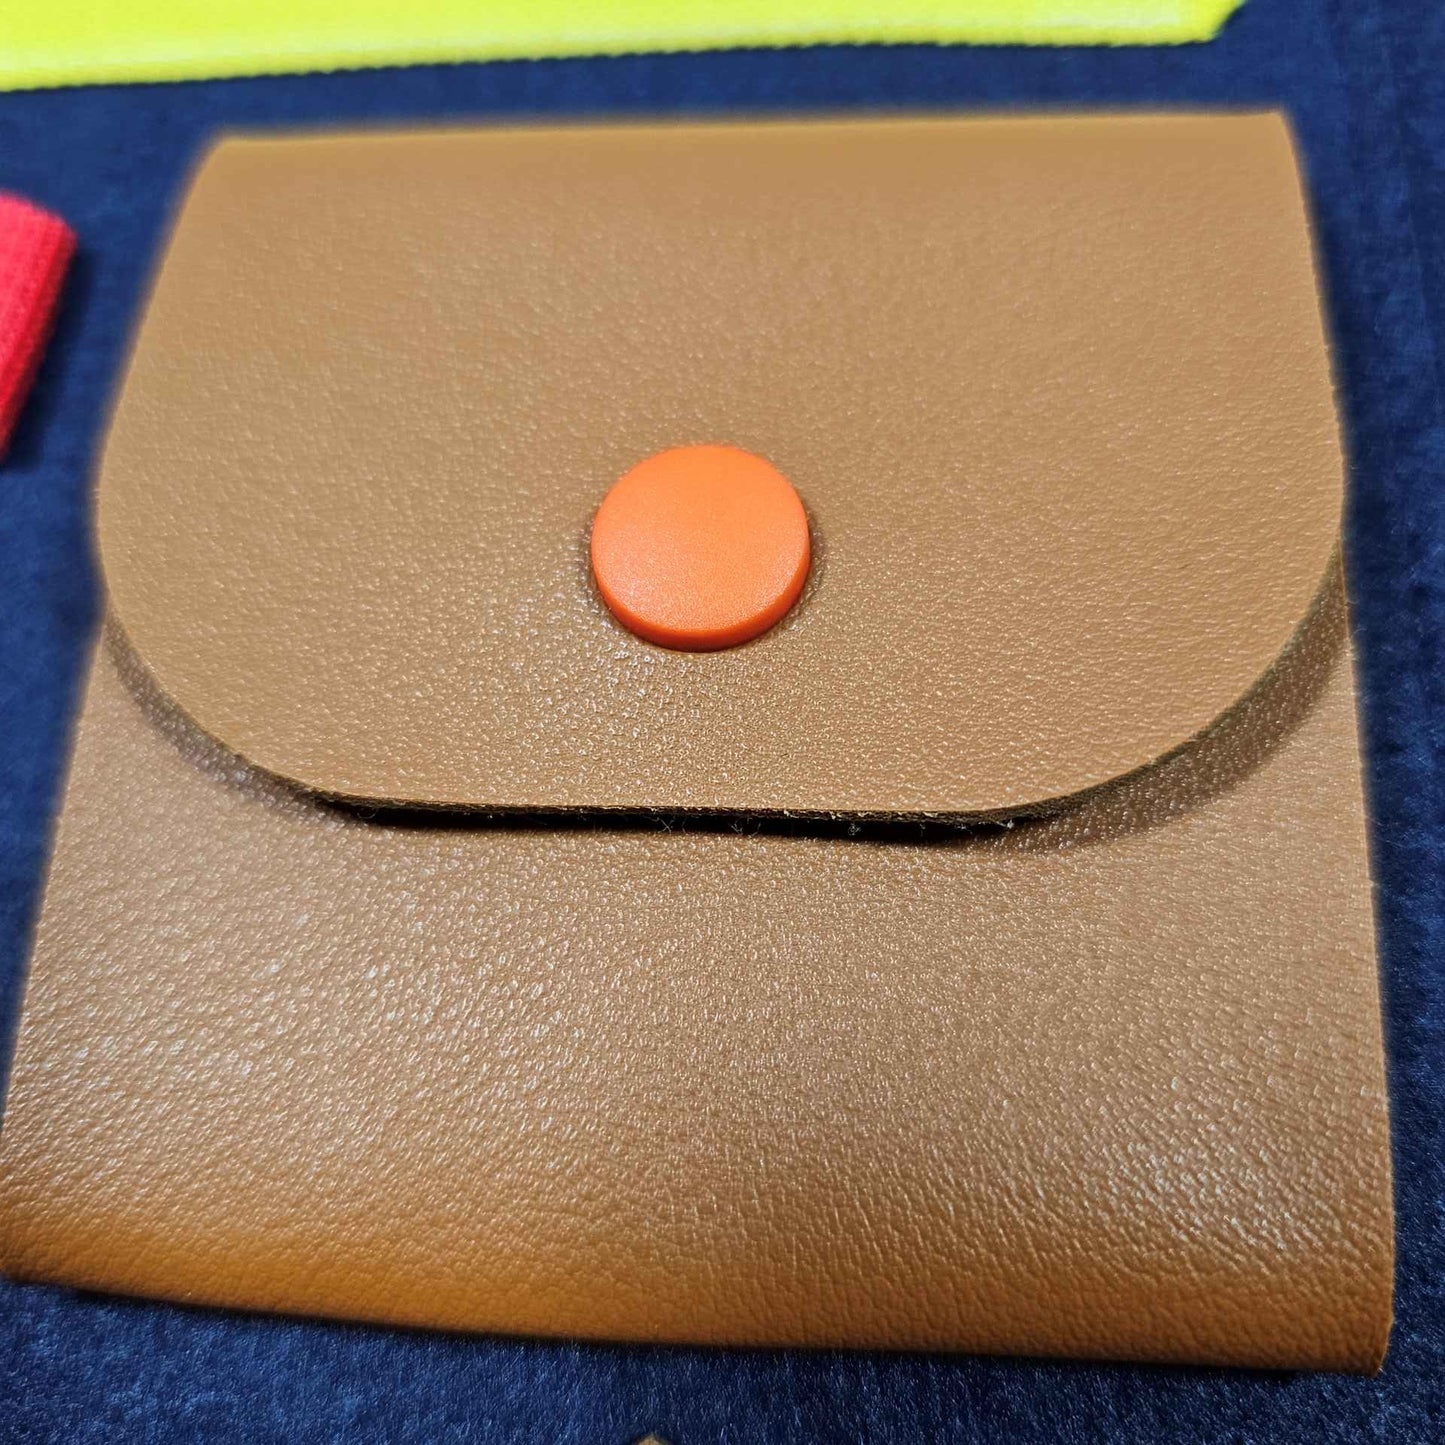 Das Bild zeigt eine Nahaufnahme eines Teils eines sensorischen Lernspielzeugs – eine braune Tasche mit einem orangefarbenen Druckknopf.